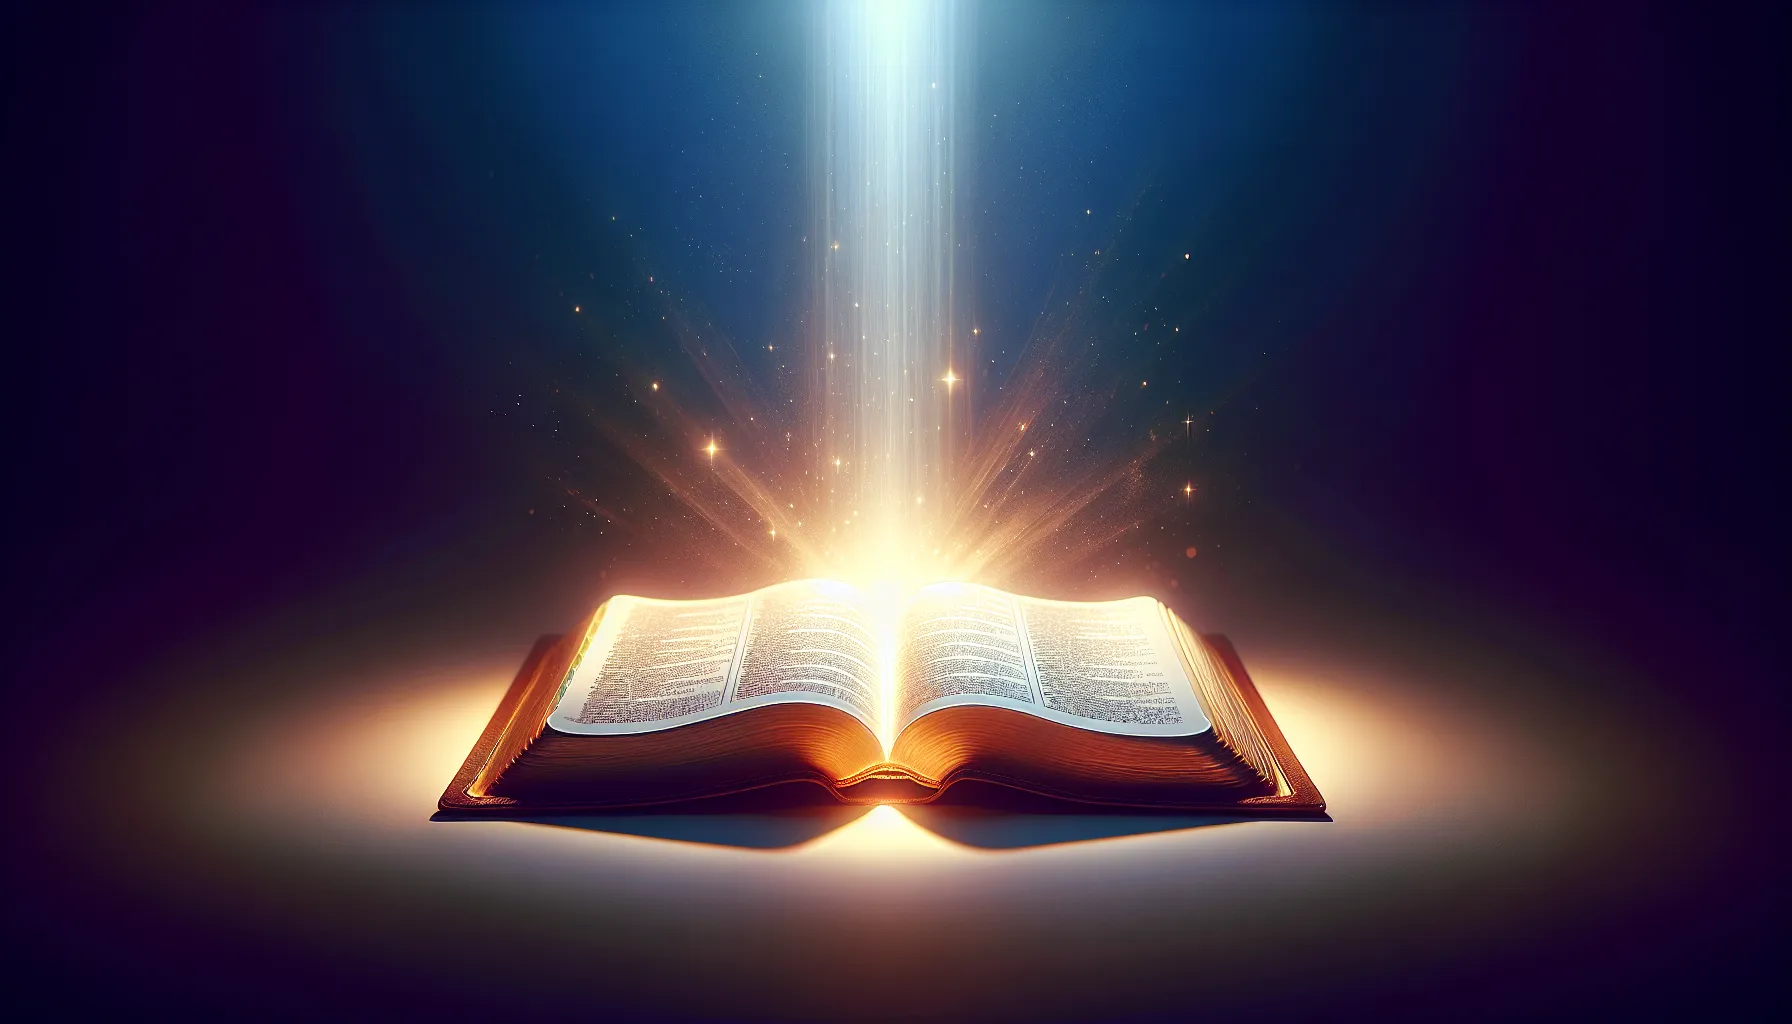 Imagen ilustrativa de una Biblia abierta con una luz brillante sobre ella, simbolizando la importancia espiritual y la guía que proporciona a los cristianos.